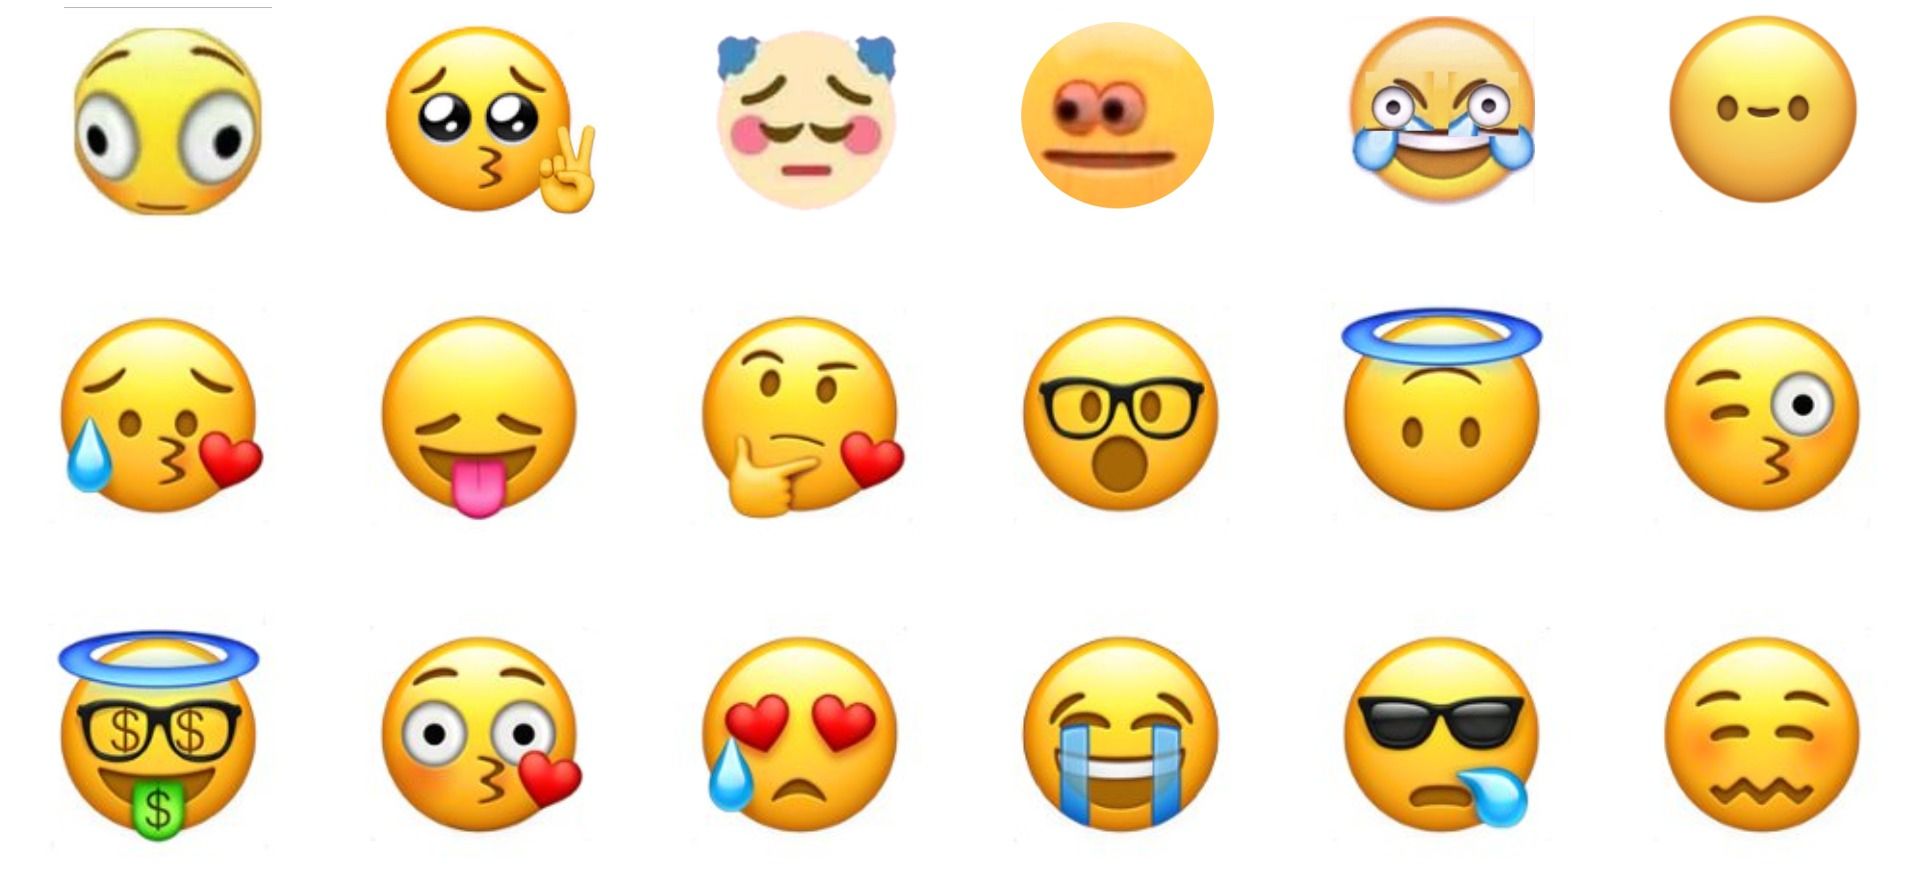 best slack emojis reddit